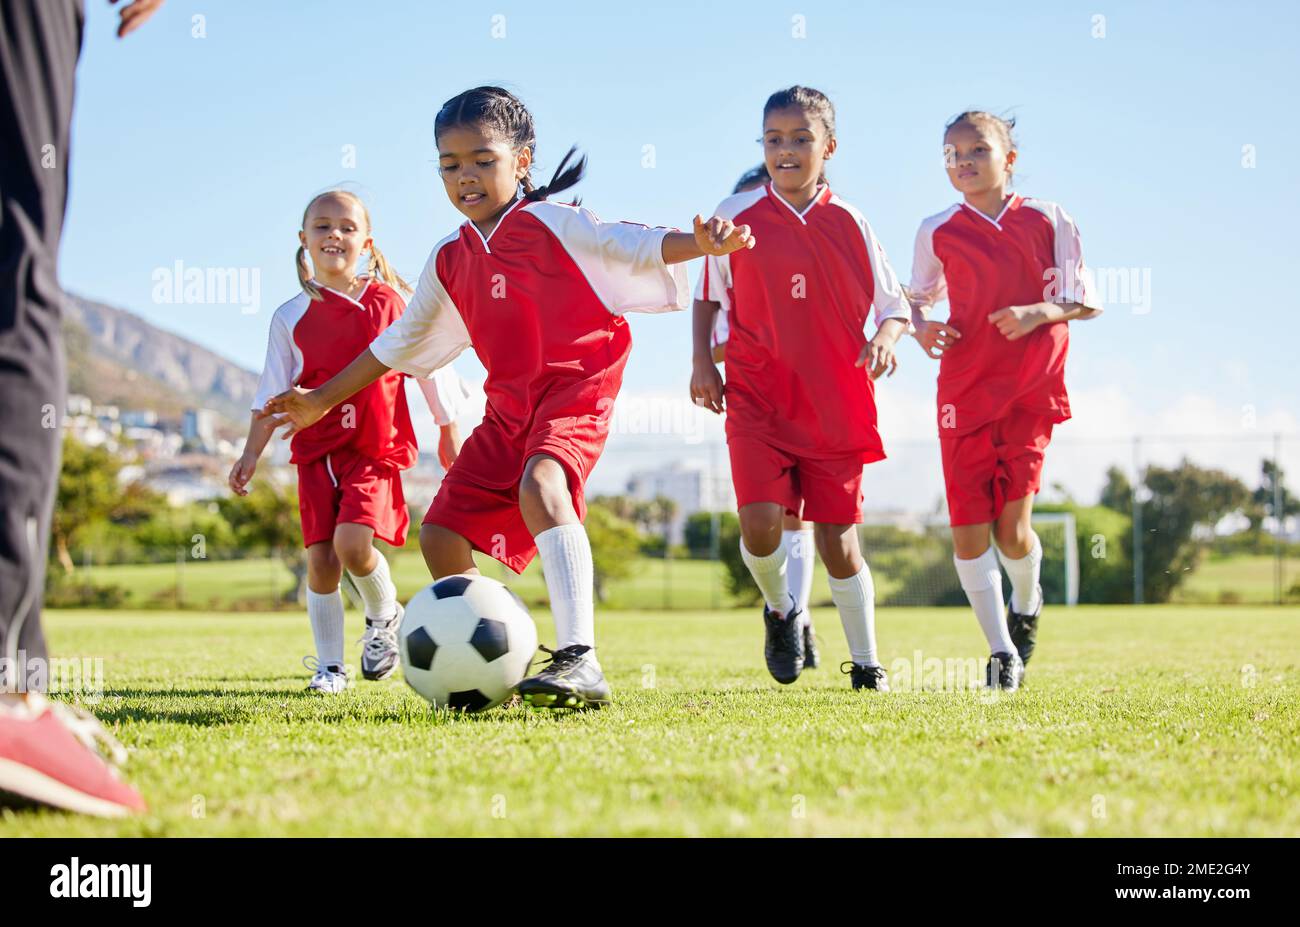 Calcio, palla o sport e una squadra di ragazze allenarsi o giocare insieme su un campo per la pratica. Fitness, calcio ed erba con i bambini che corrono o. Foto Stock